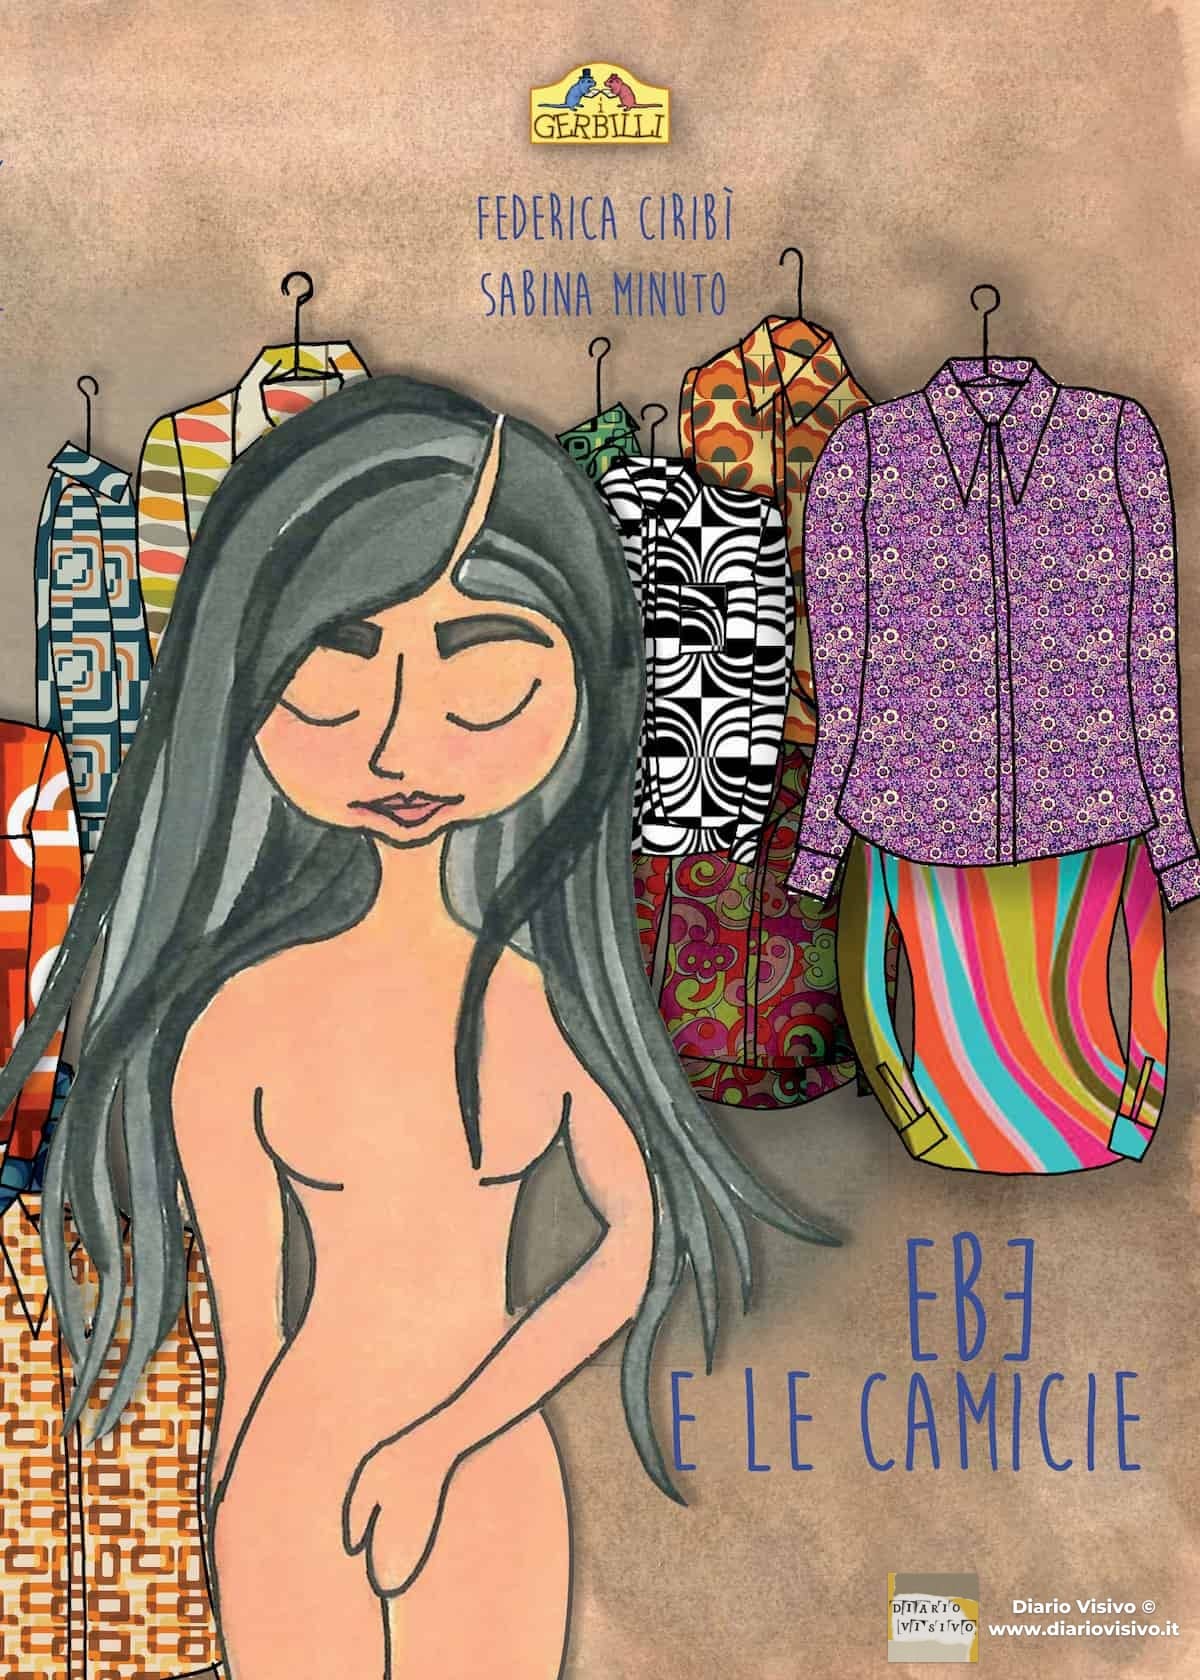 Presentazione dell’album illustrato “Ebe e le camicie”